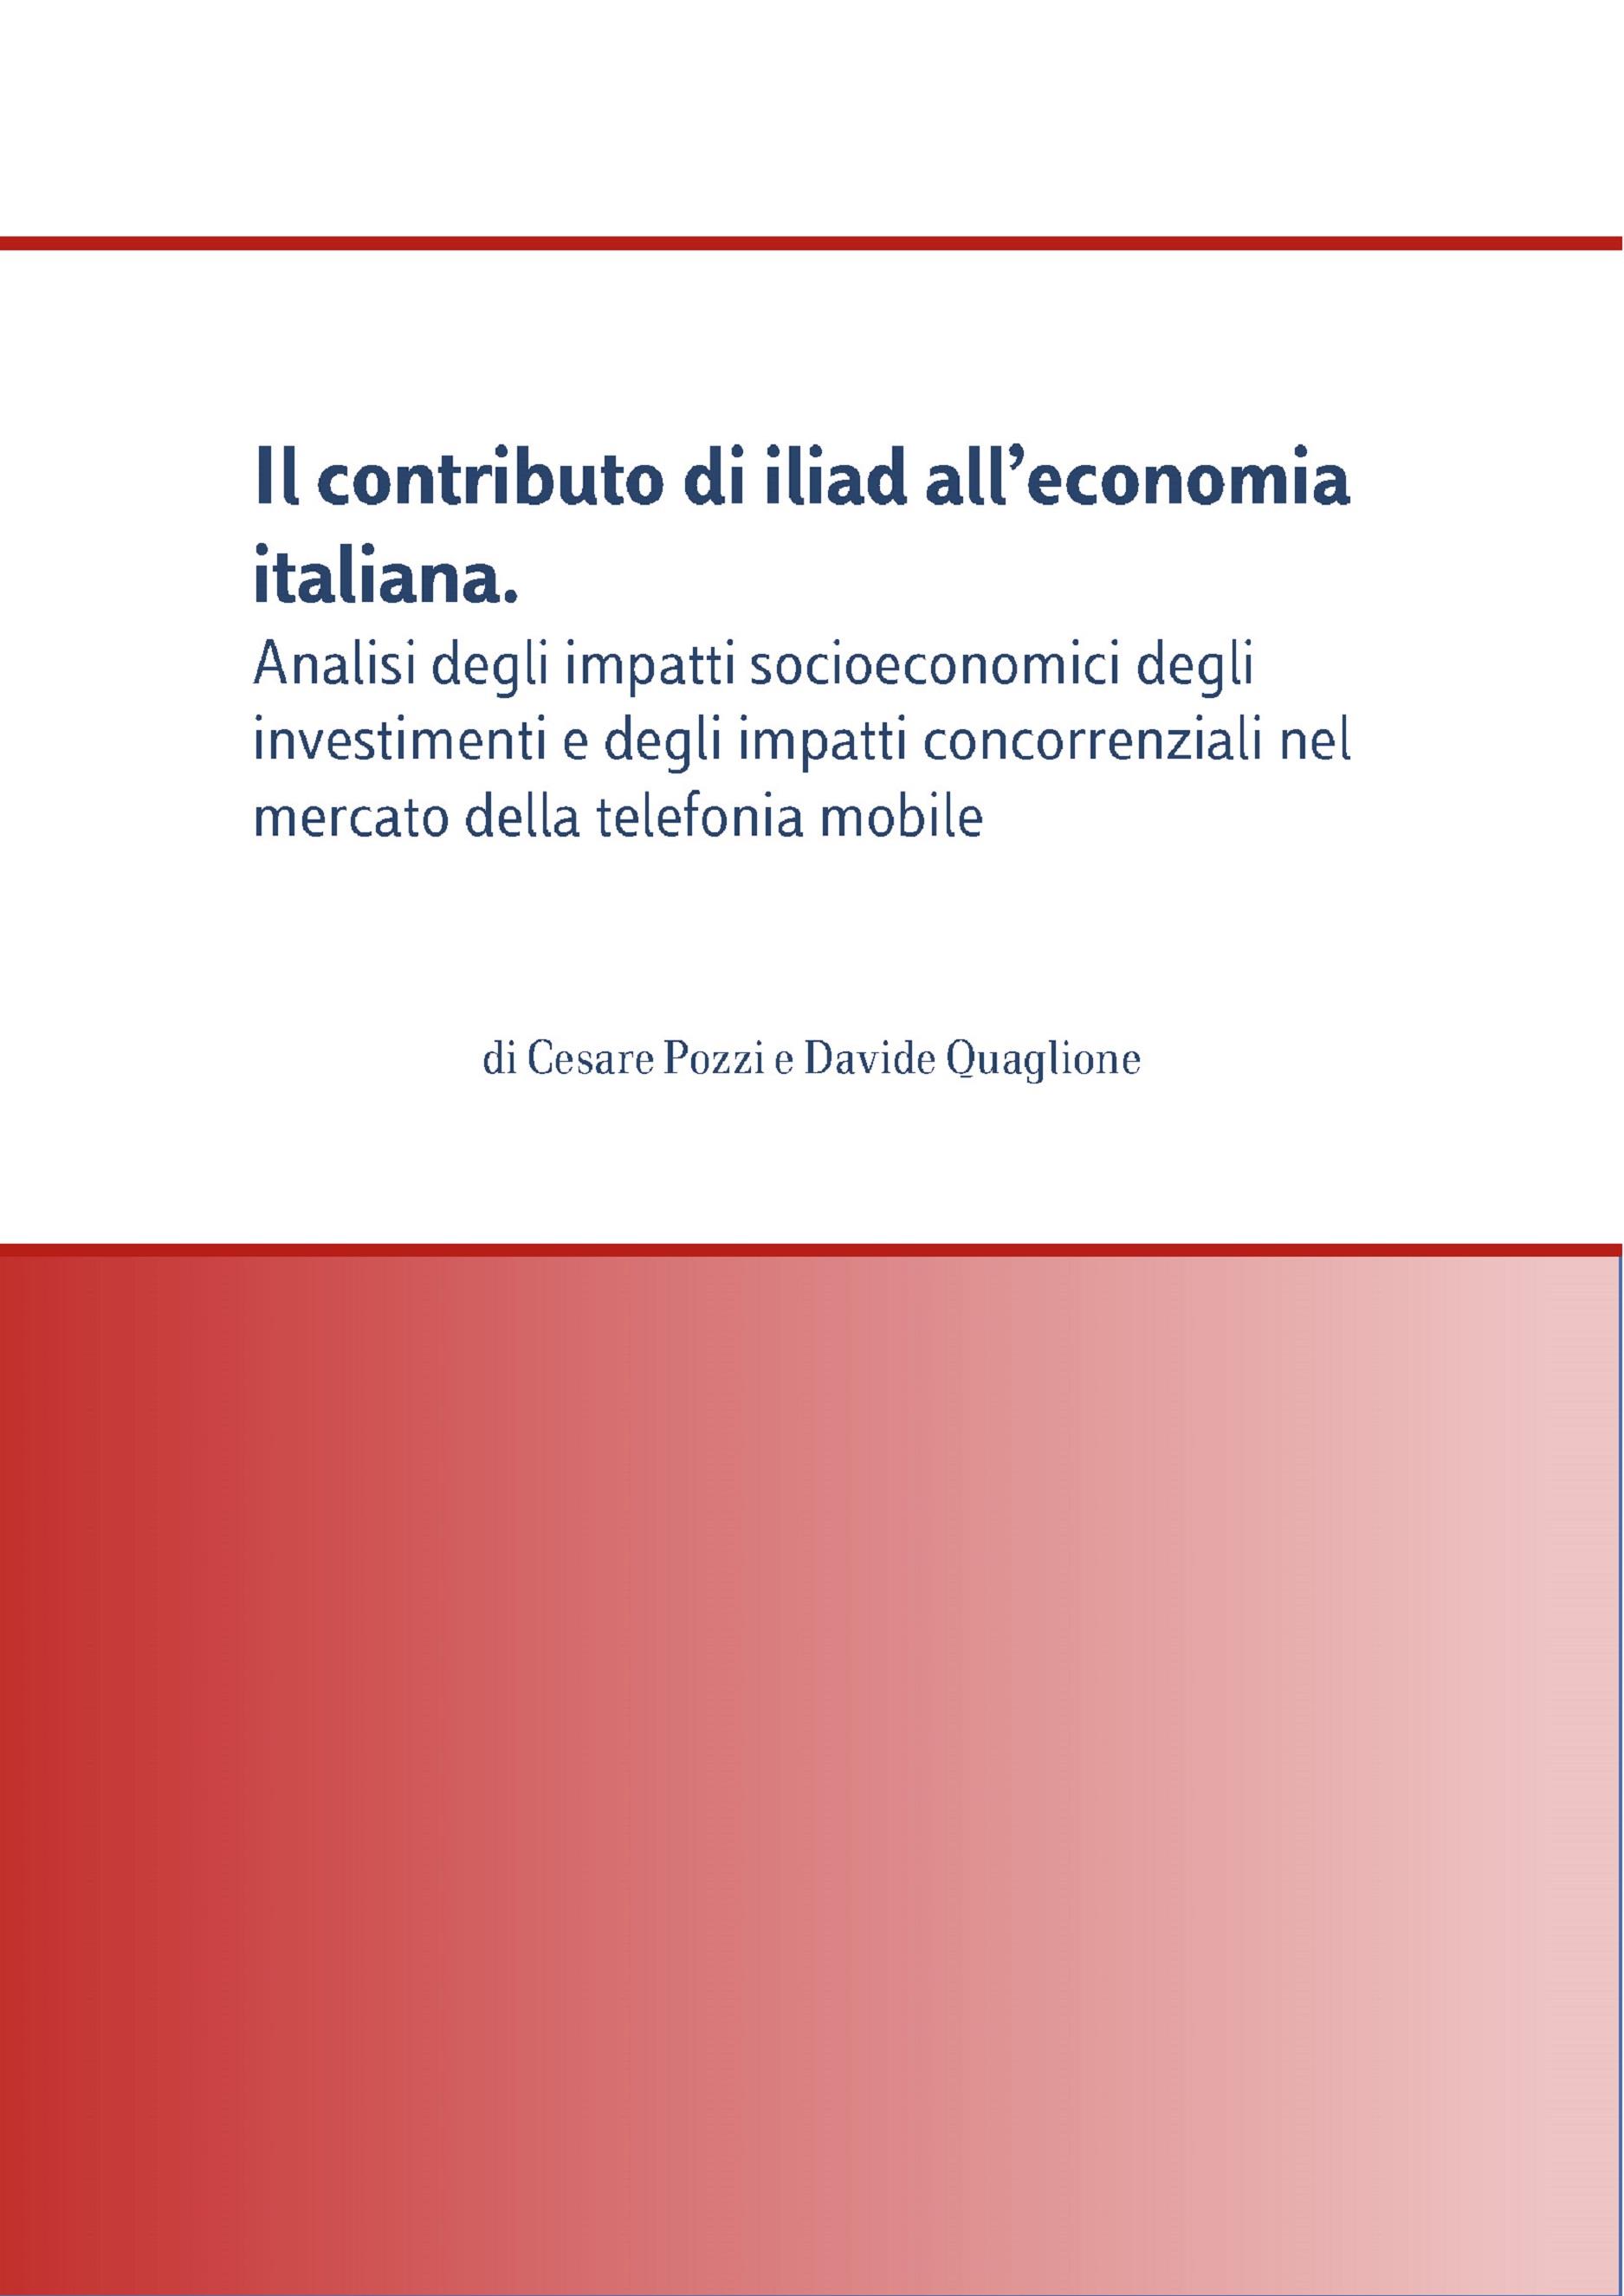 Il contributo di iliad all’economia italiana. Analisi degli impatti socioeconomici degli investimenti e degli impatti concorrenziali nel mercato della telefonia mobile